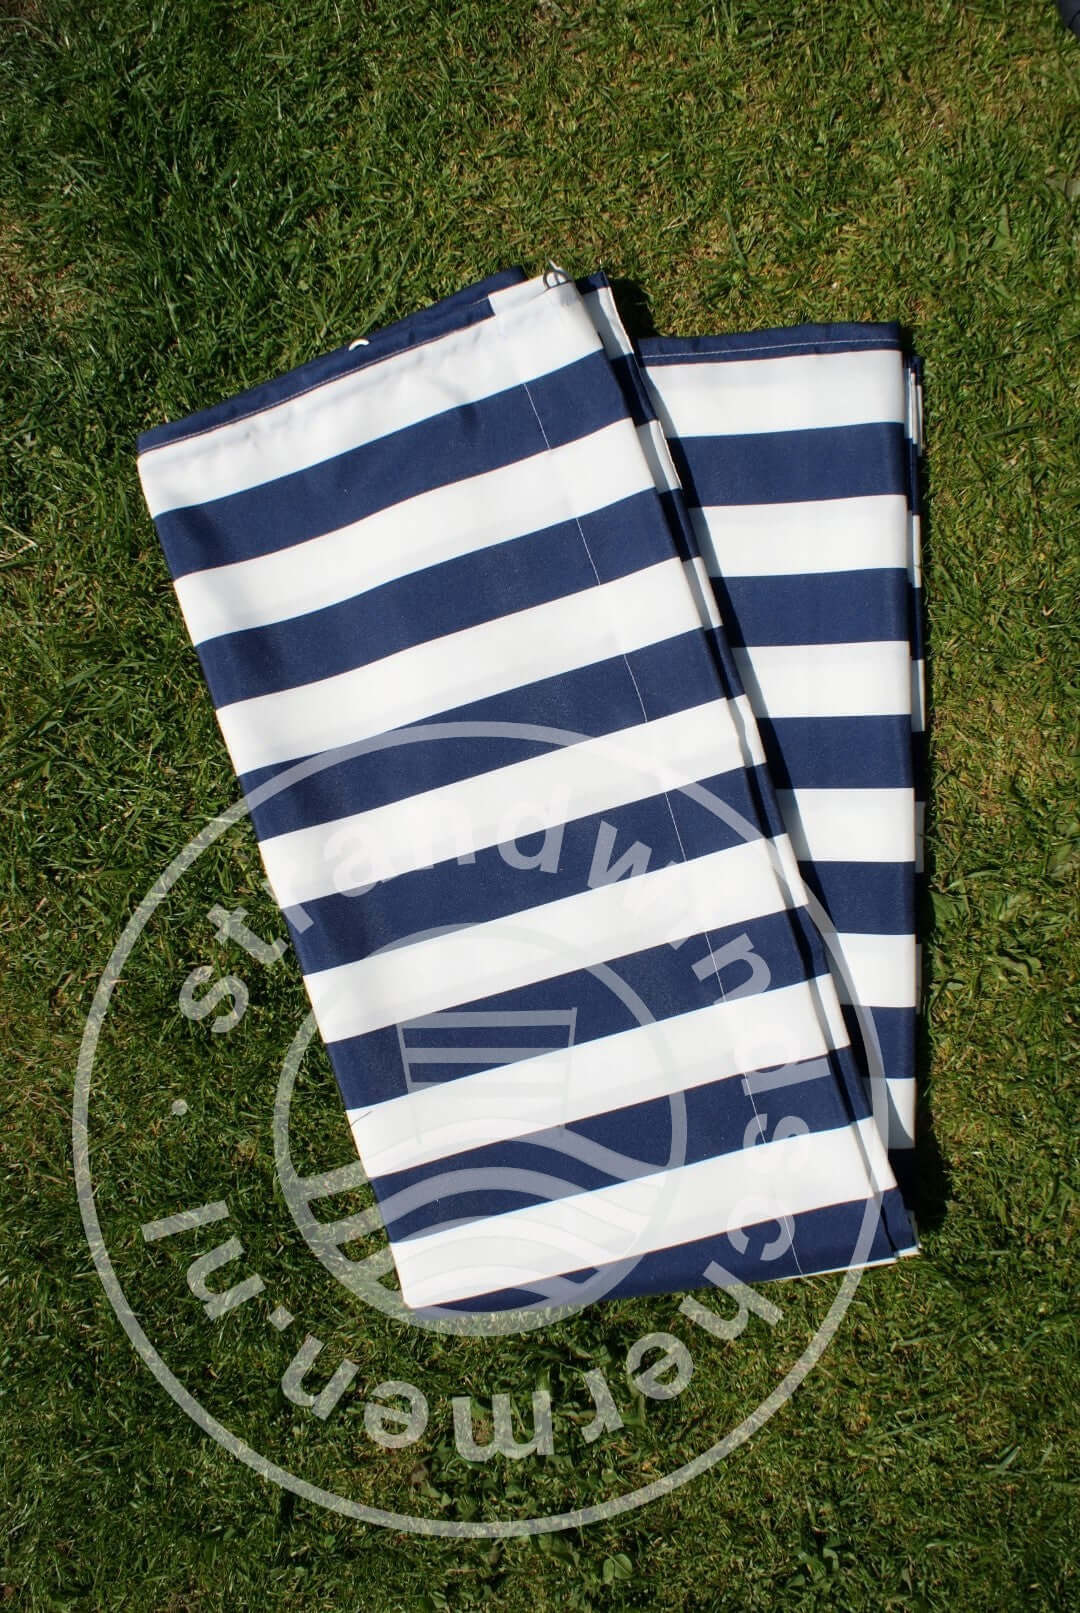 Tissu-5m-Bleu/Blanc Polyester Pare-Brise-Tissu